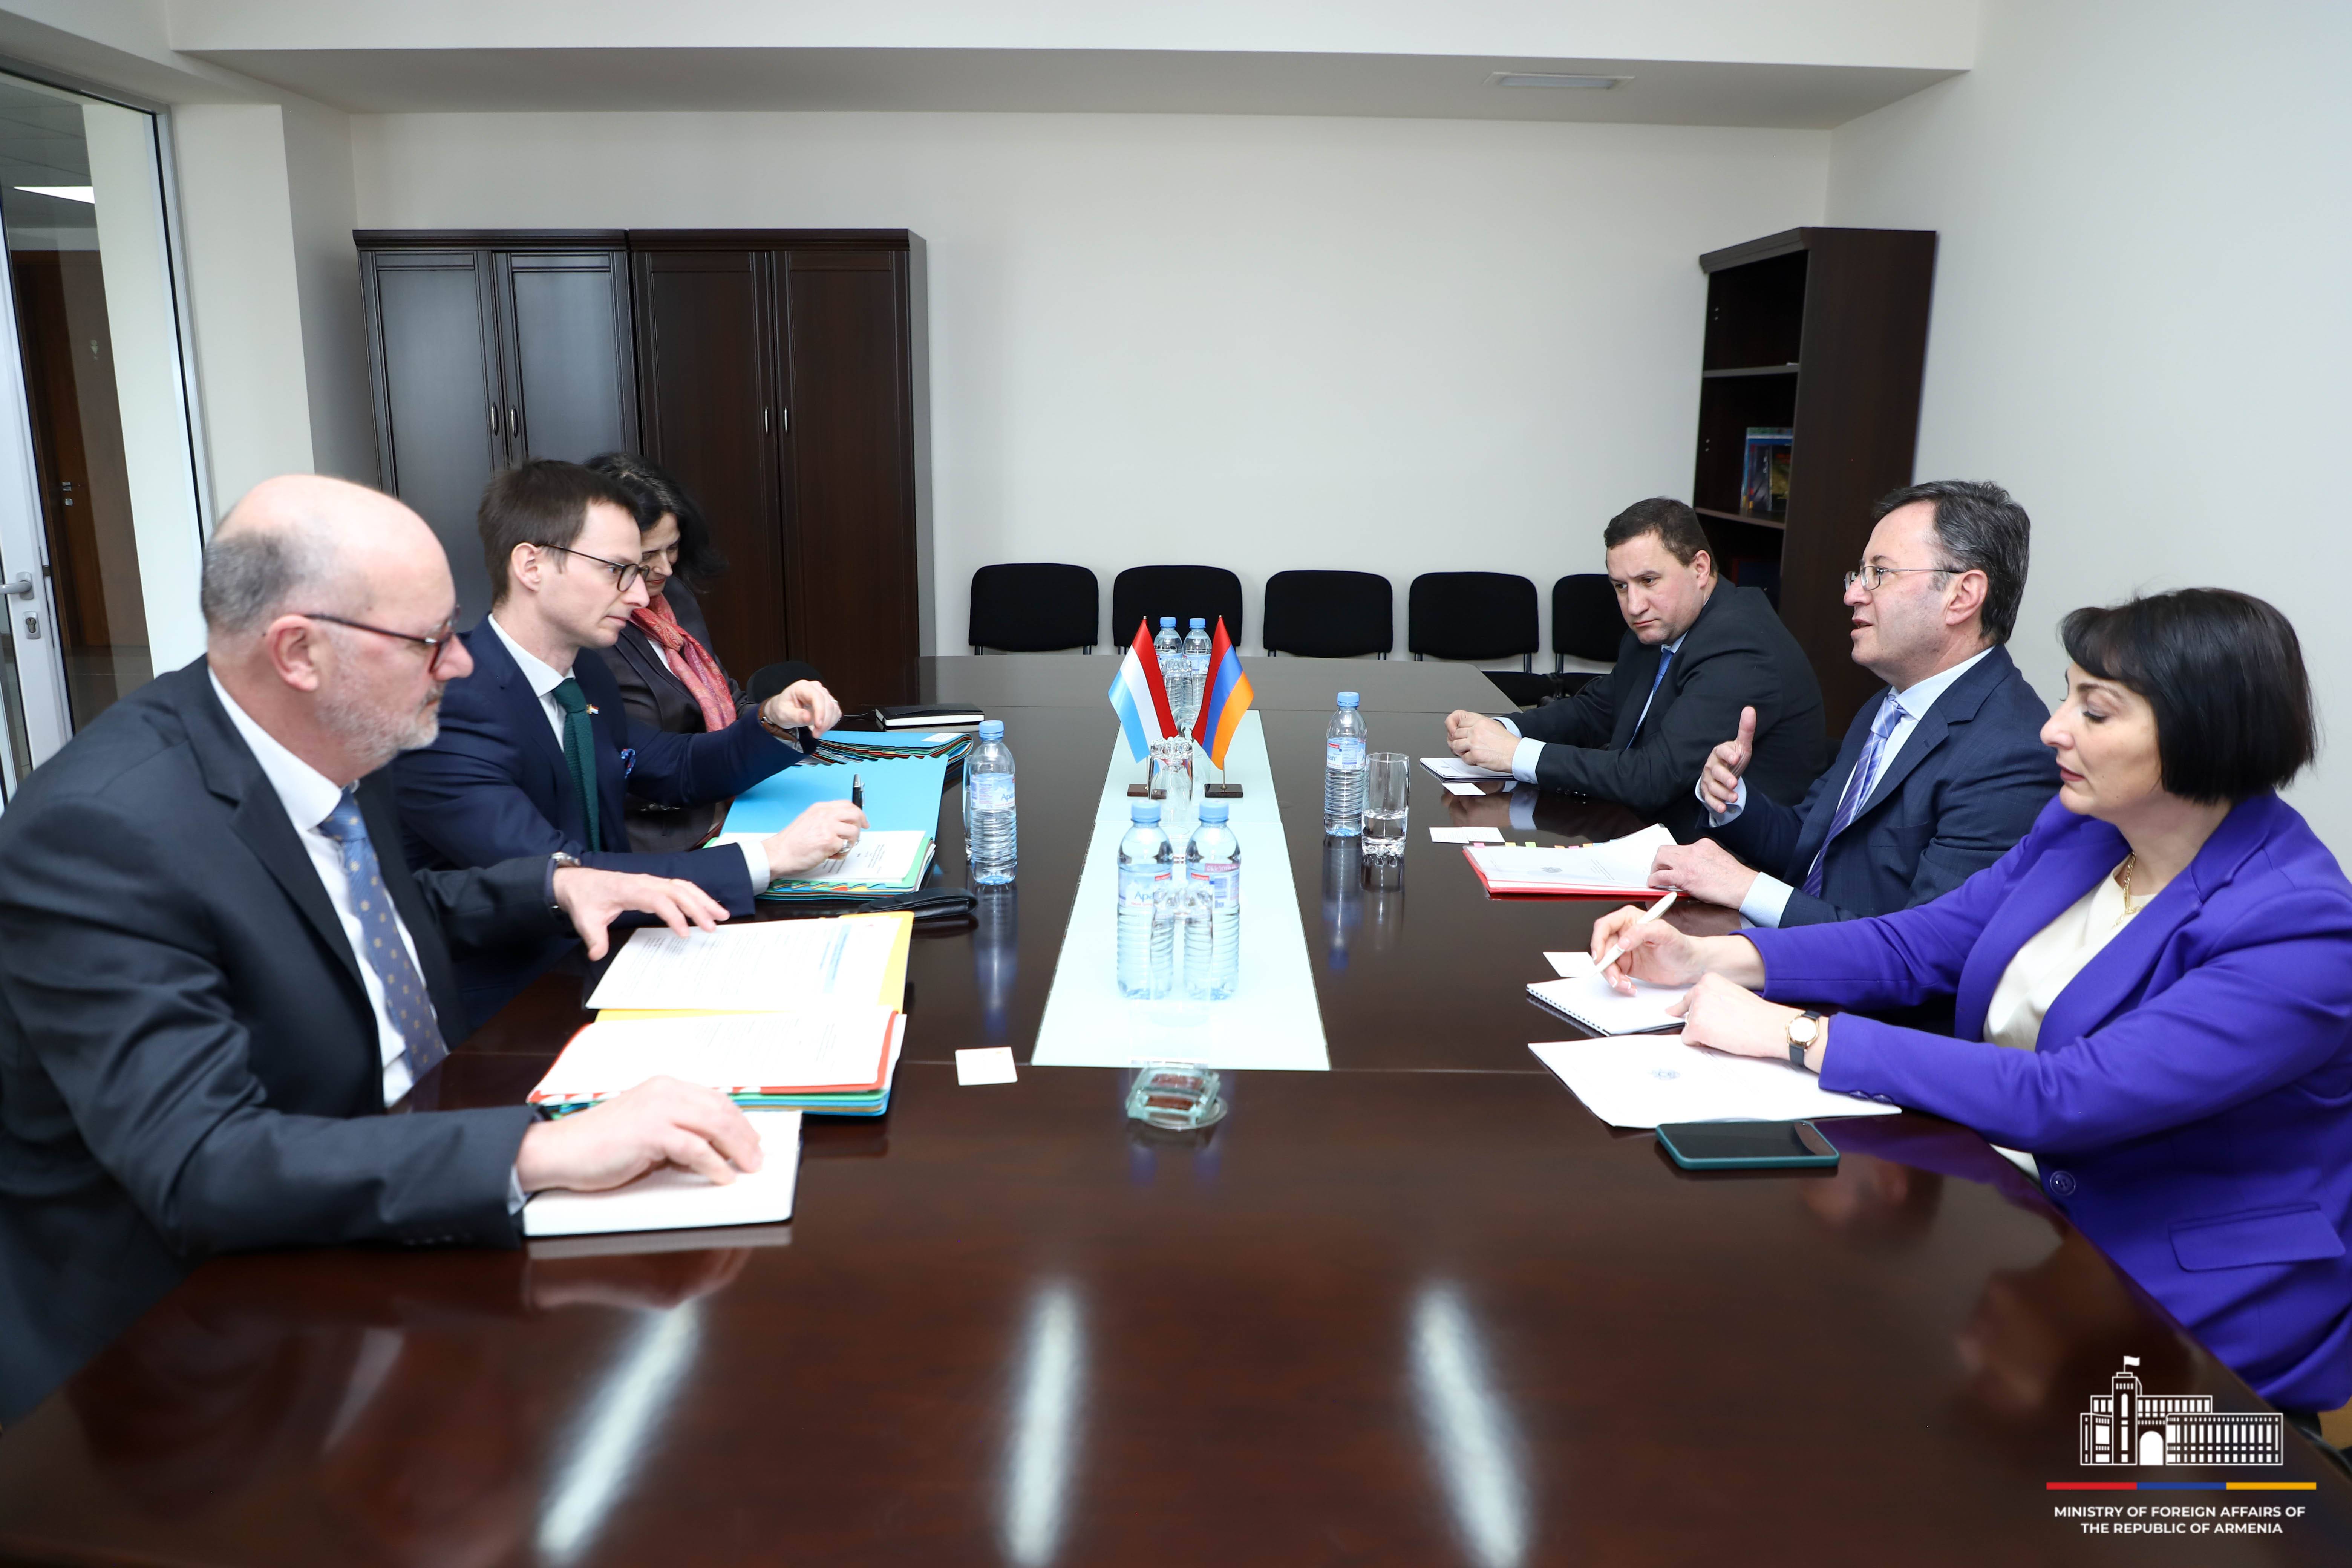 Երևանում տեղի են ունեցել քաղաքական խորհրդակցություններ ՀՀ-ի և Լյուքսեմբուրգի Դքսության արտաքին գործերի նախարարությունների միջև